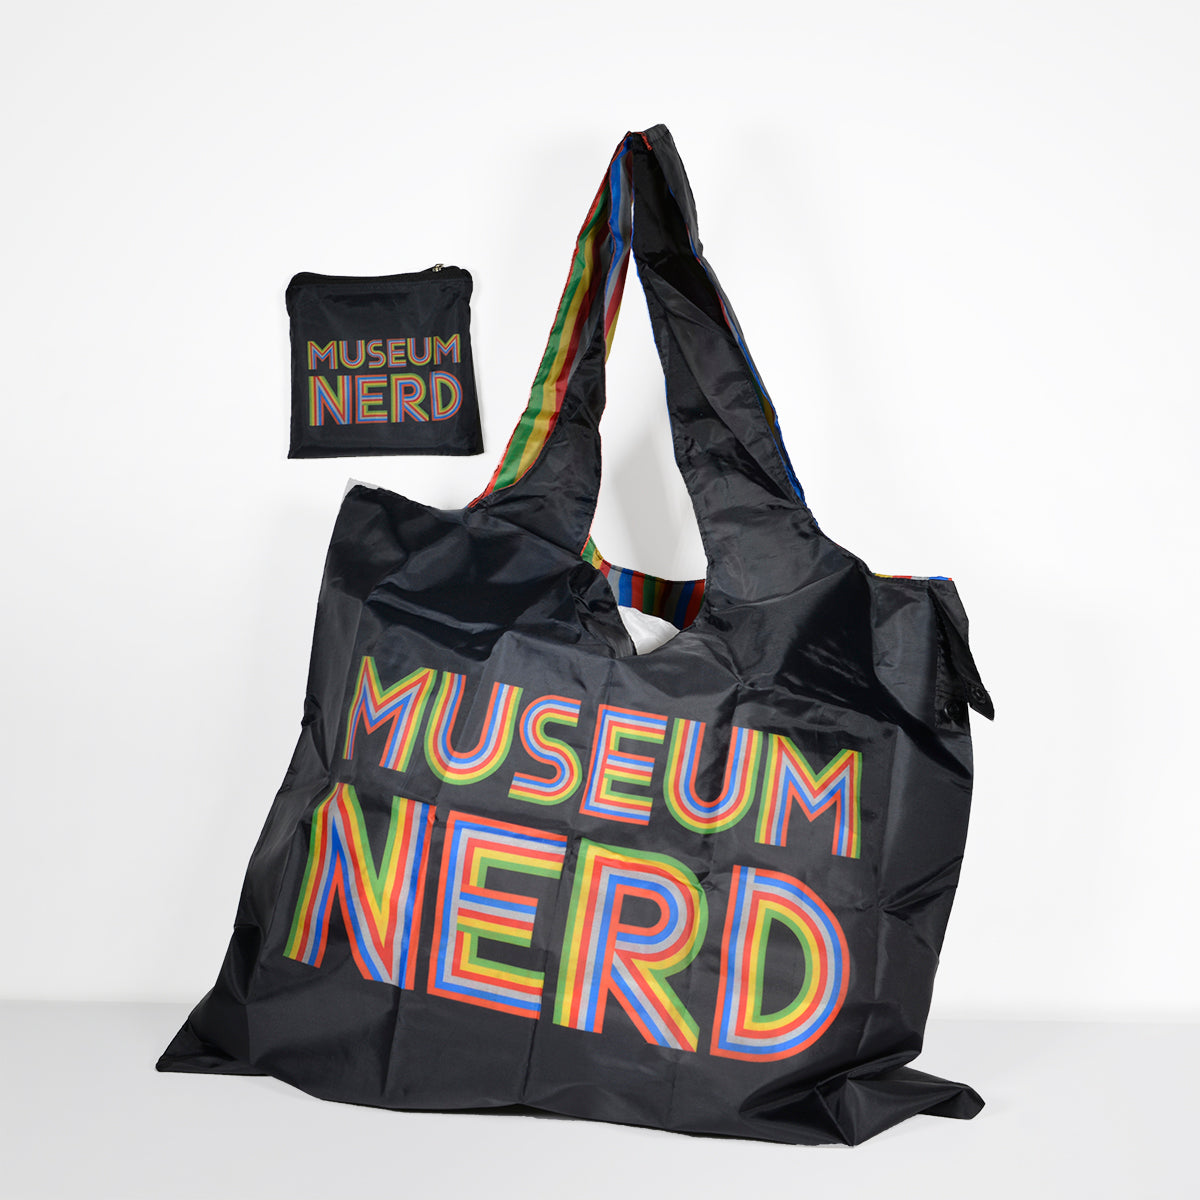 Museum Nerd tote bag next to matching storage bag.